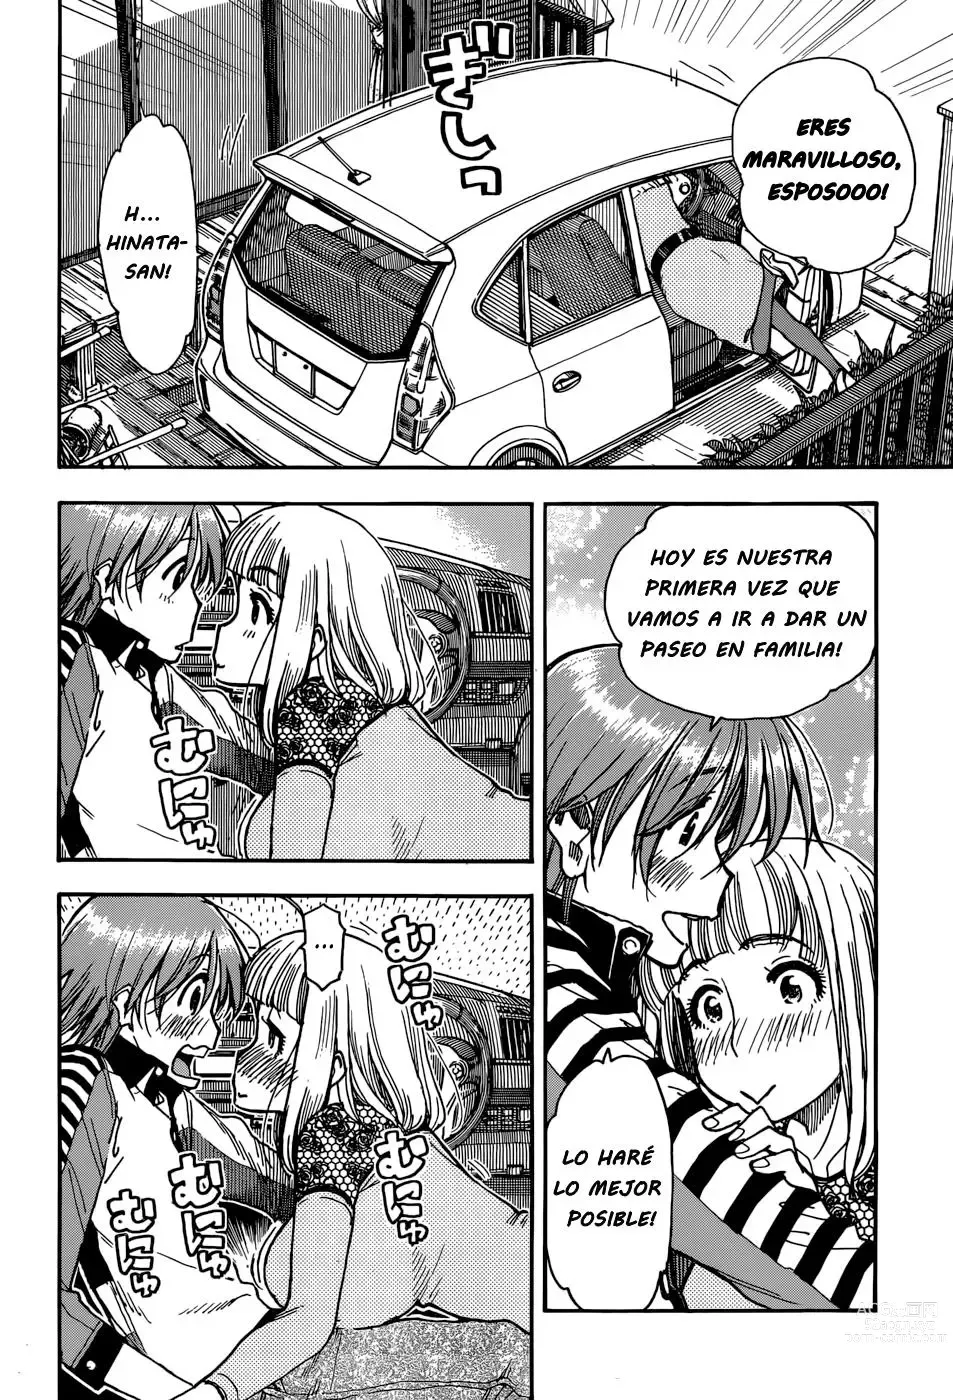 Page 155 of manga Ashitaba-san Chi no Muko Kurashi v01